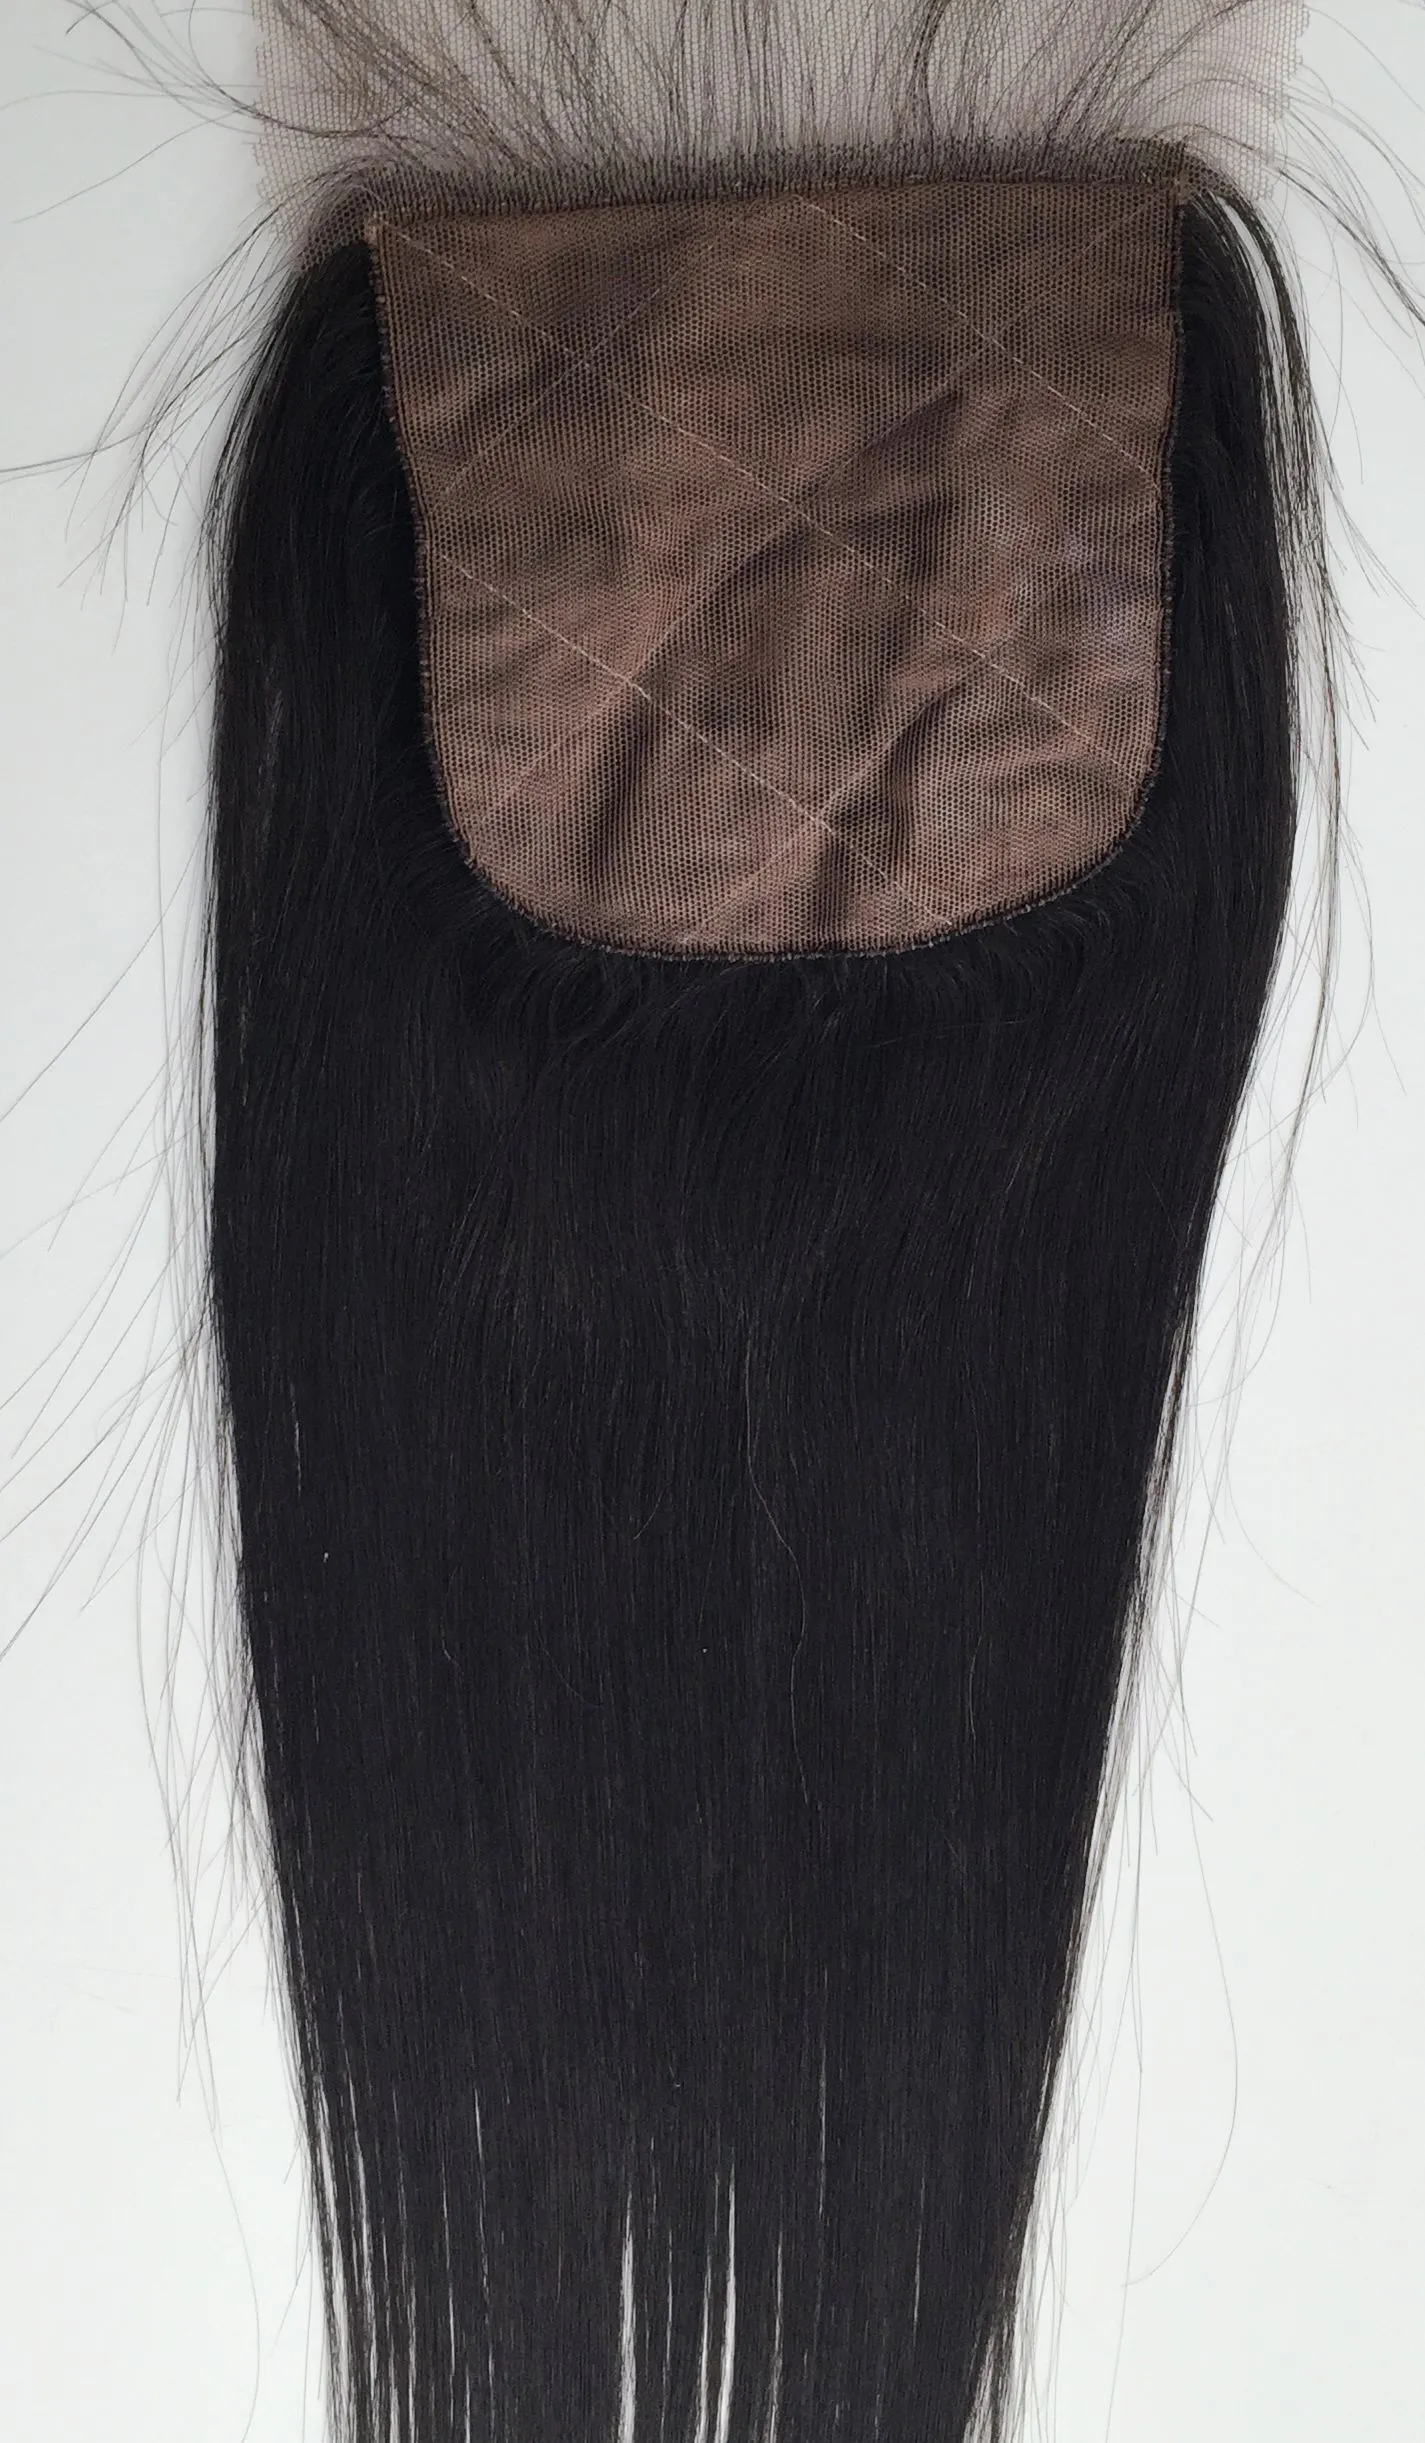 4x4 Seiden-Basisverschluss, gerades reines peruanisches Haarteil, Seiden-Spitzenverschluss, natürlich schwarz, freier mittlerer Seitenteil, Babyhaar